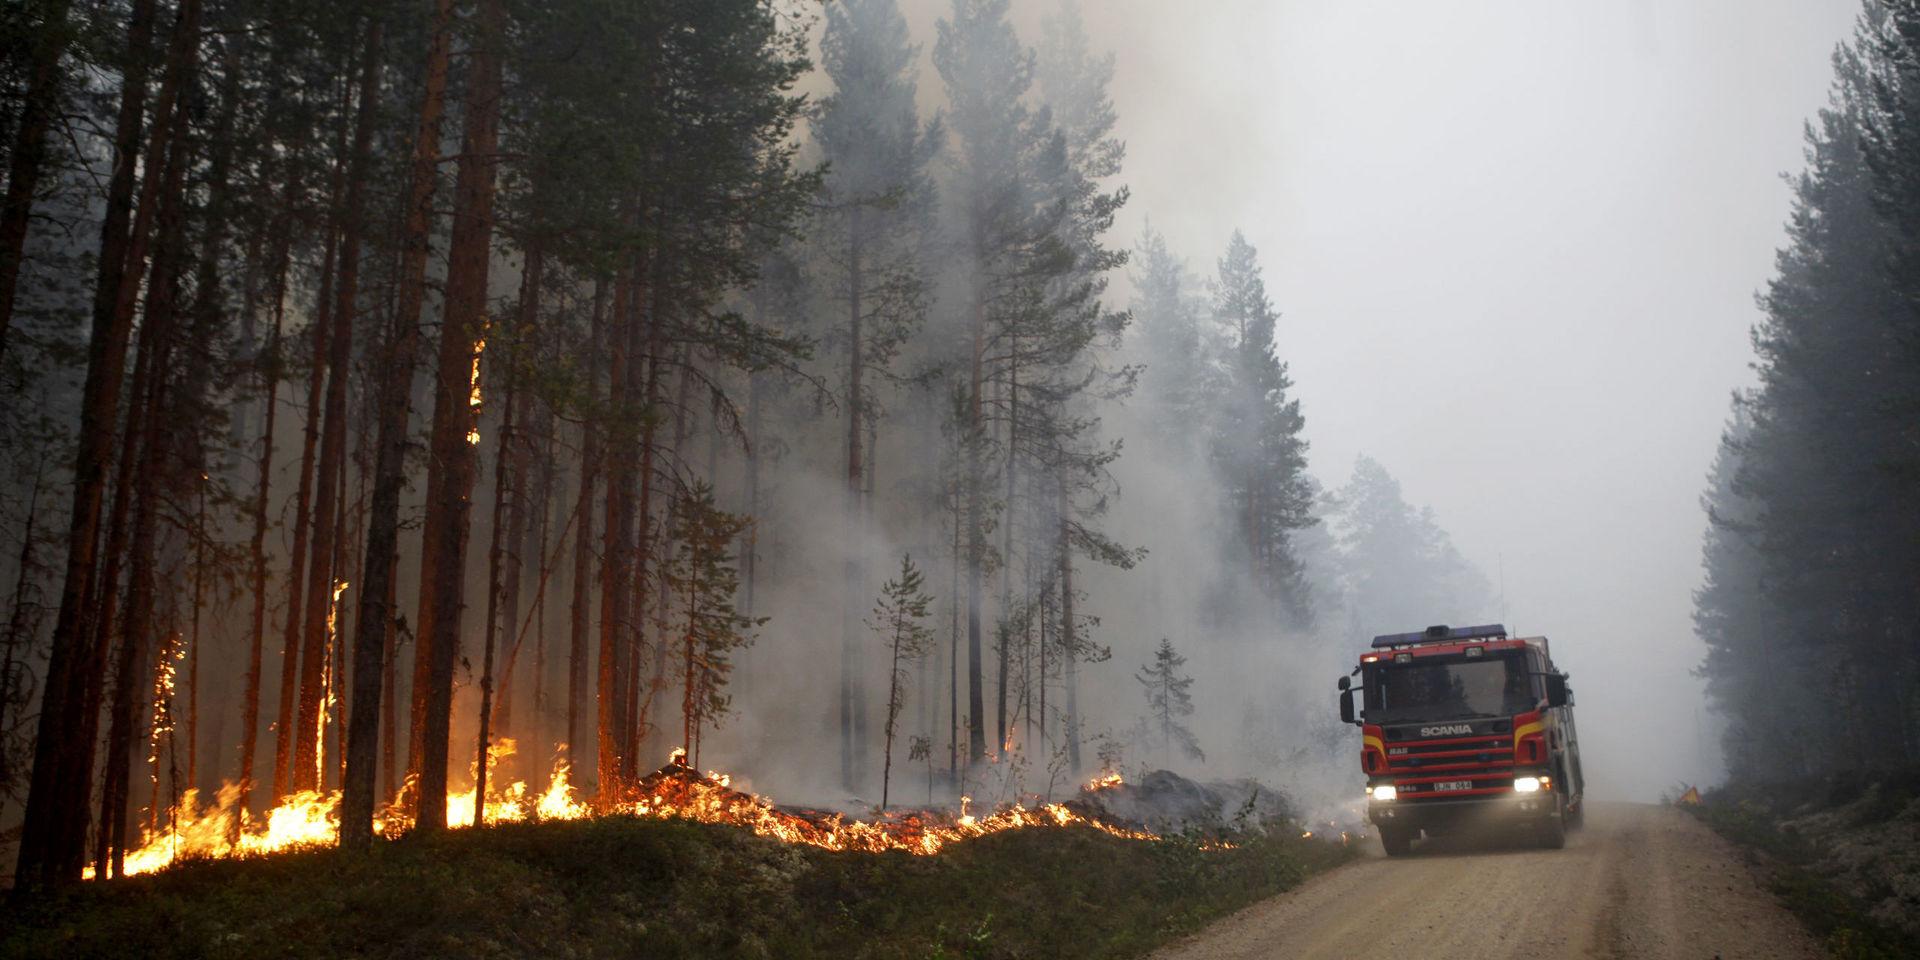 Tusentals deltidsbrandmän saknas i Sverige, enligt brandfacket BRF. Något som innebär att de som jobbar får slita än hårdare, bland annat på de skogsbränder som just nu rasar i Sverige. Här en bild från strax utanför Ljusdal.